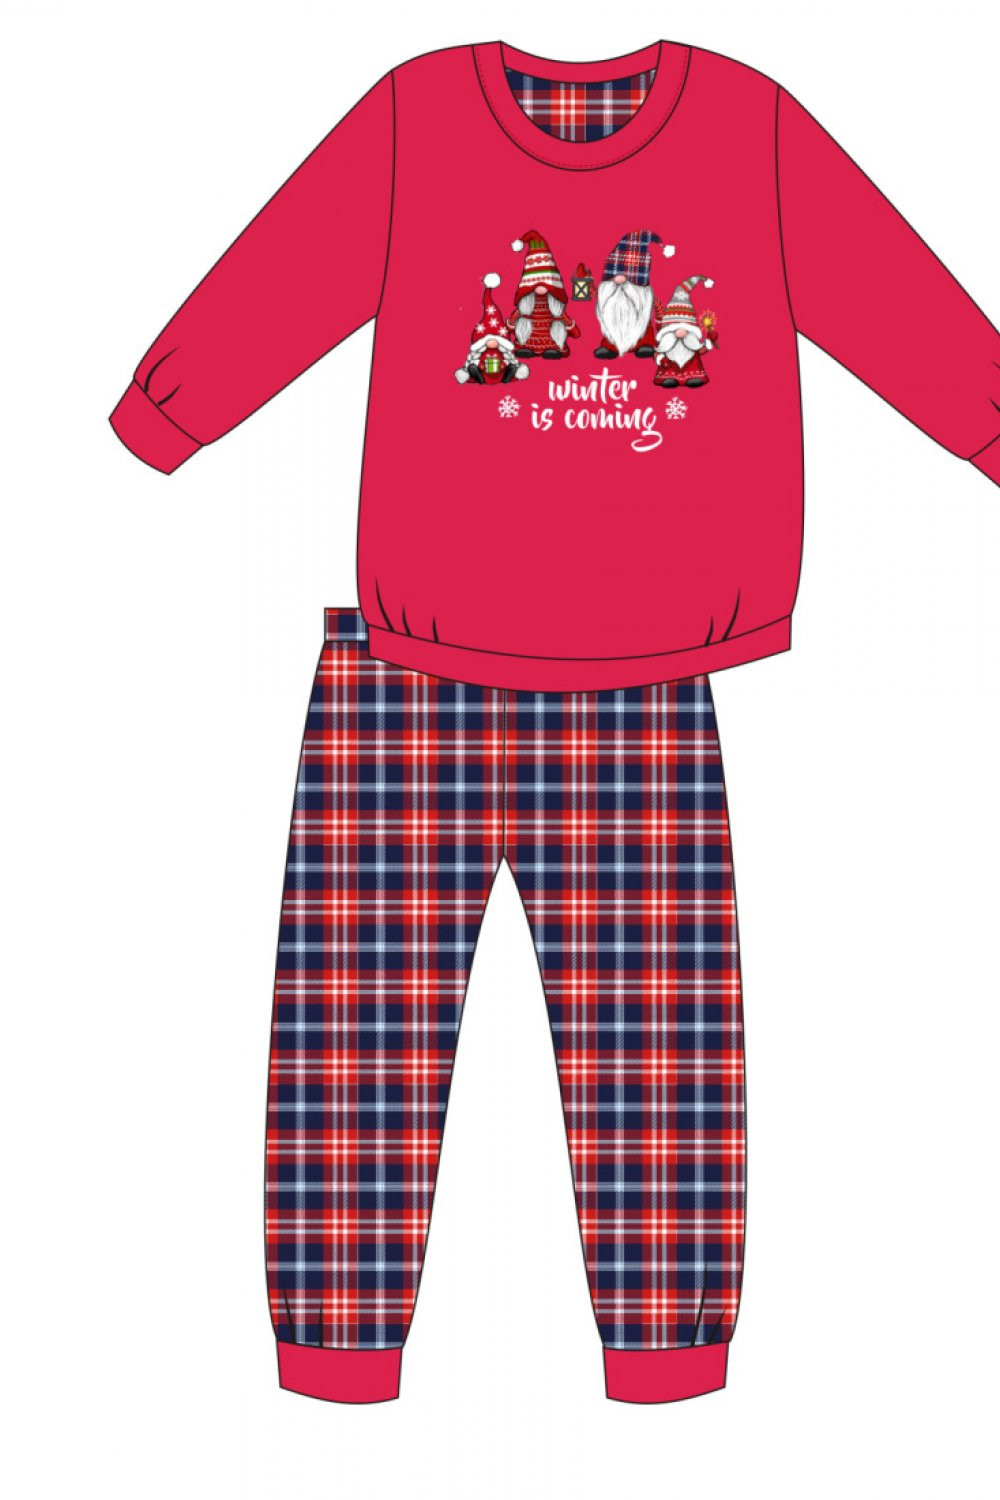 Dívčí pyžamo Červená 134/140 model 16175164 - Cornette